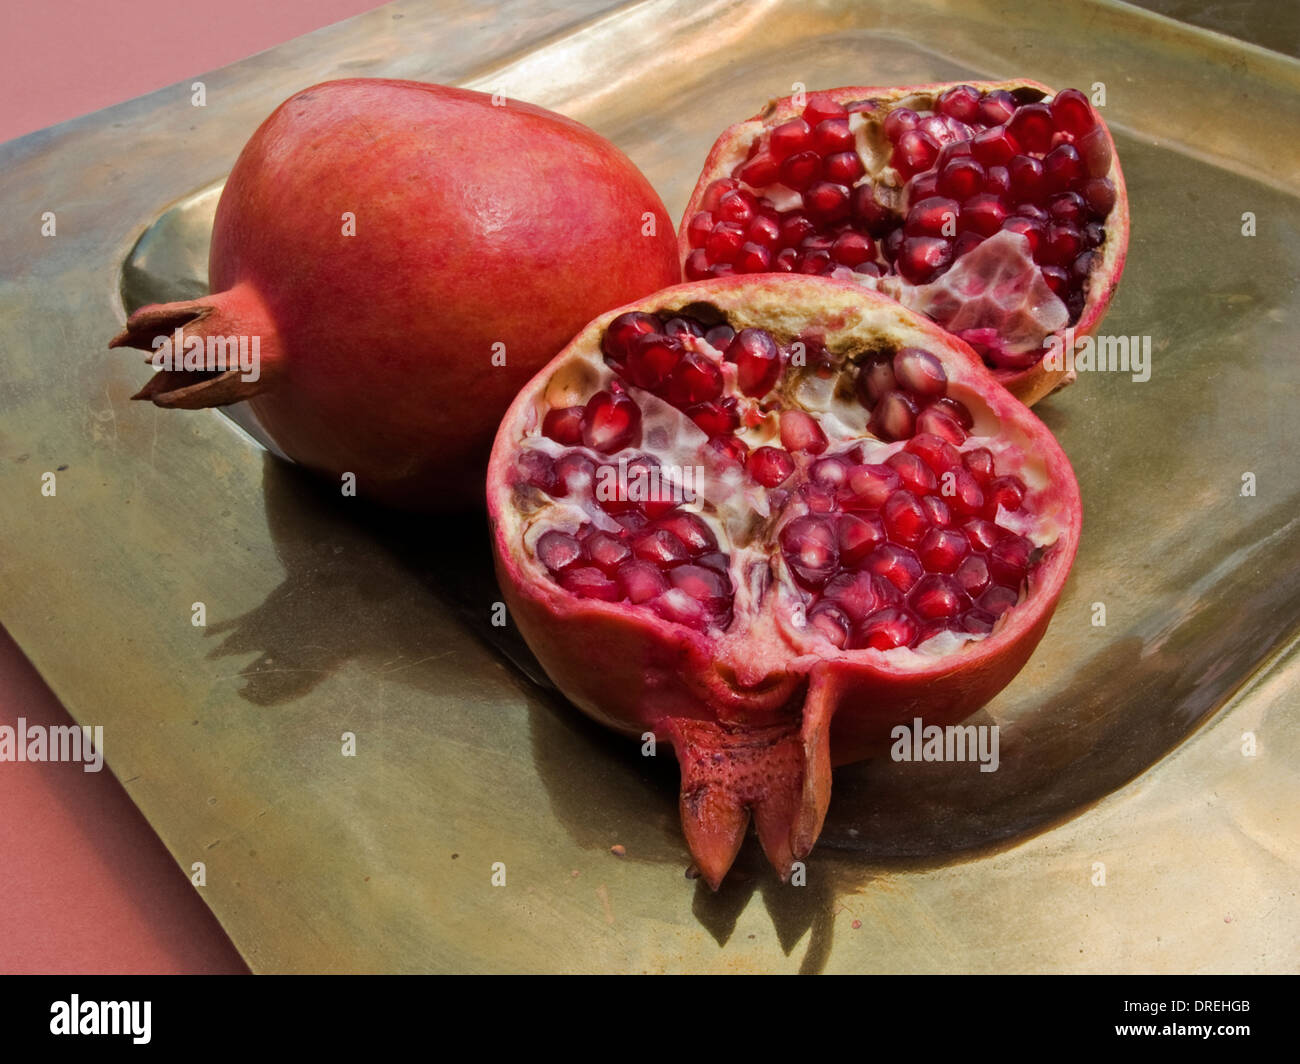 zwei Granatäpfel gehört zu öffnen, zeigen die zahlreichen rubinroten Samen innerhalb aufgeteilt Stockfoto